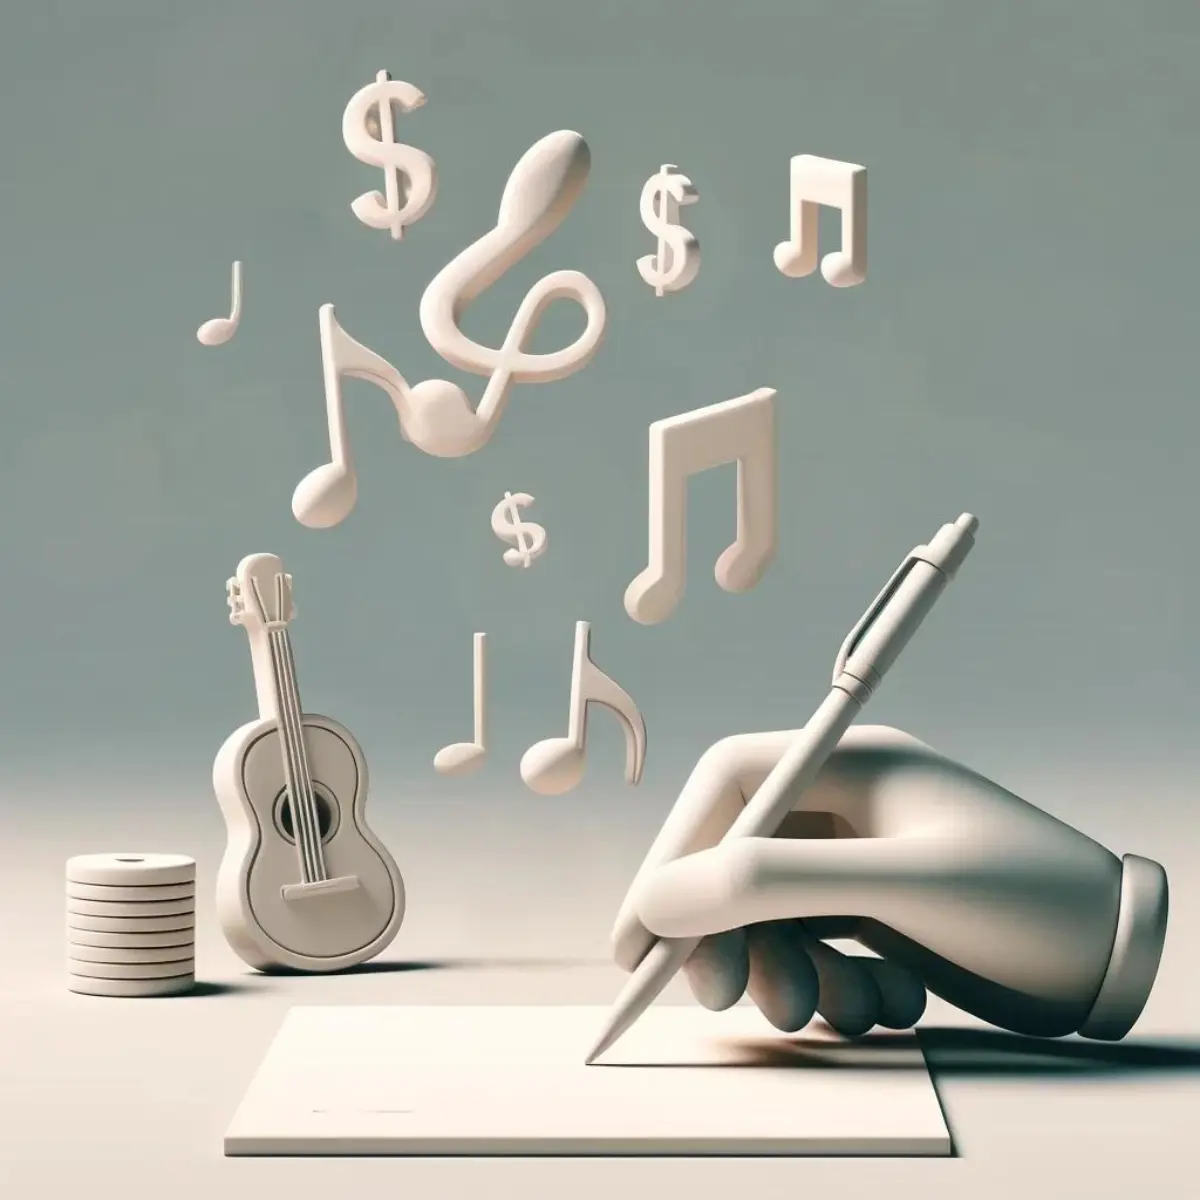 Les redevances musicales expliquées : Comprendre la fiscalité de l'IRS pour les redevances musicales